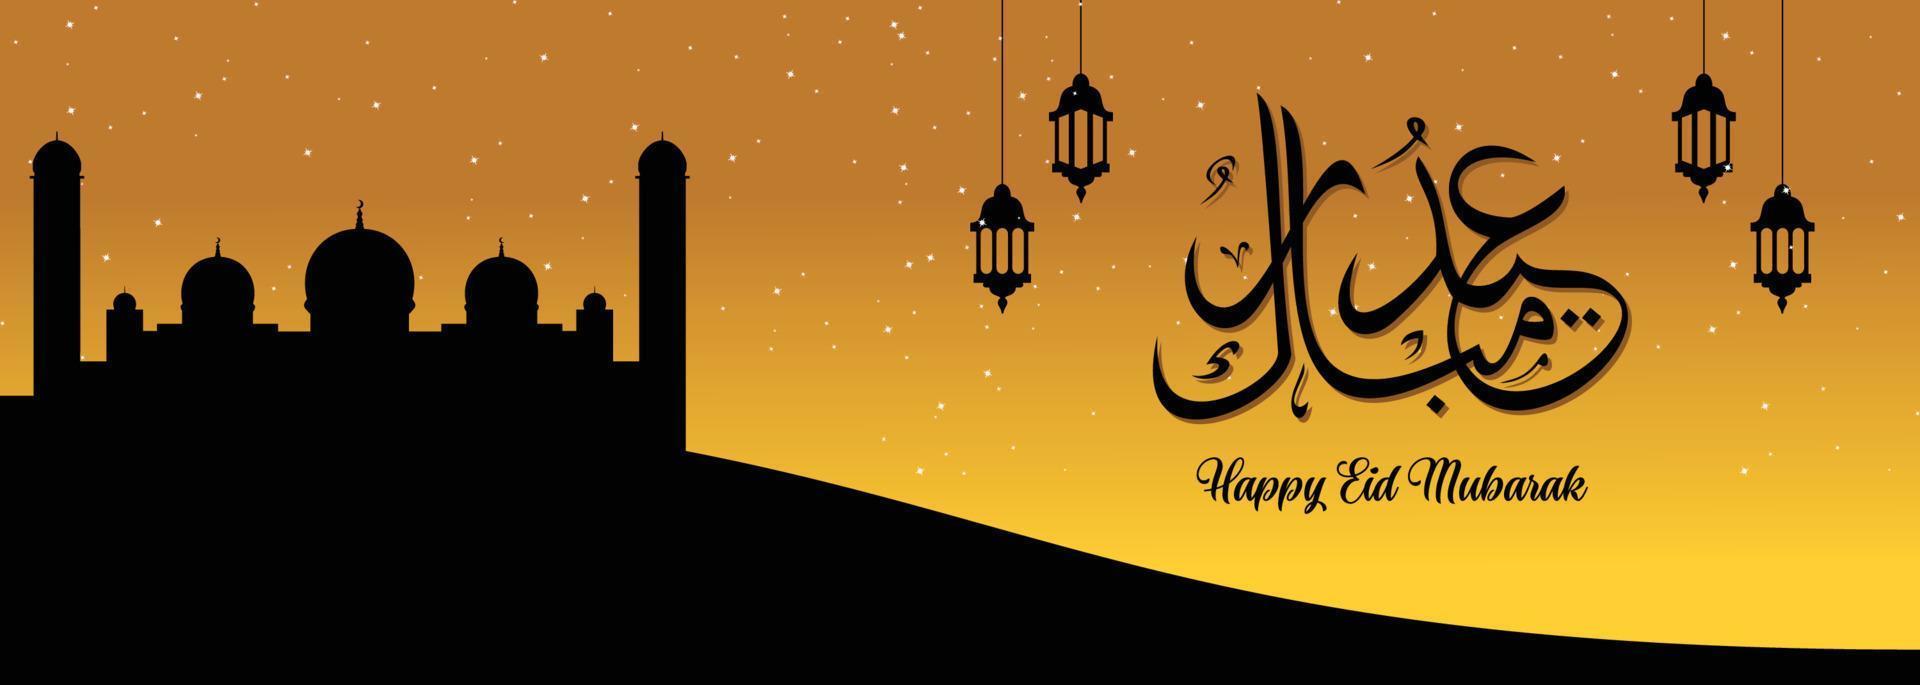 eid mubarak fondo islámico, feliz eid mubarak banner ilustración, tarjeta de felicitación islámica religión celebración musulmana. caligrafía árabe moderna vector